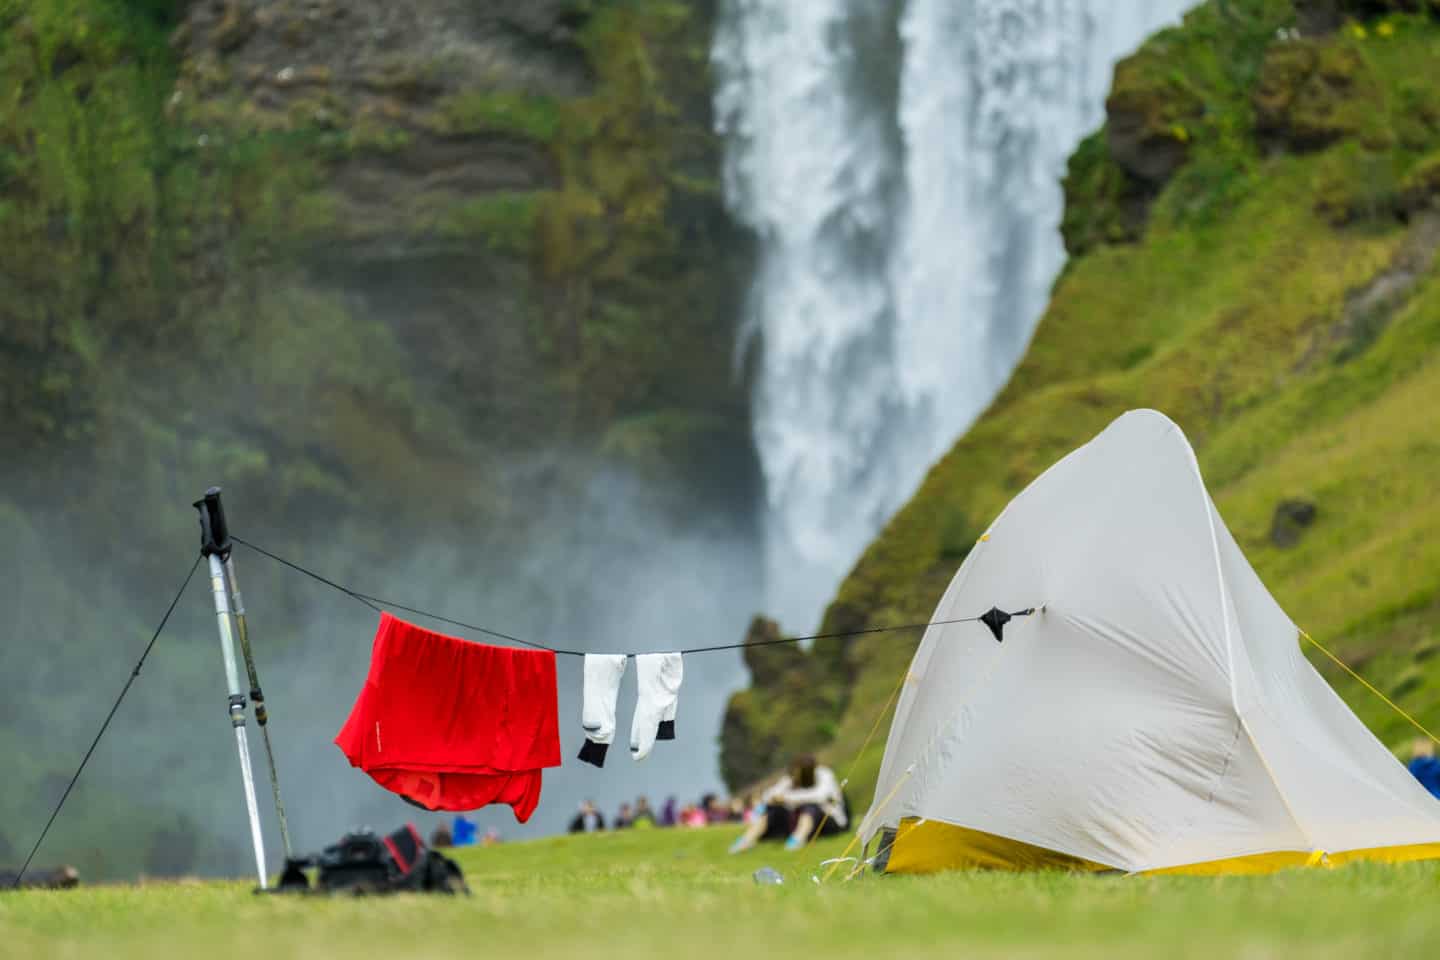 Izland Essentials - A legjobb túrabakancsok Izlandra - Tippek a legjobb cipőkhöz Izlandra, jó téli és nyári túrabakancsok Izlandra. Túracipő, hócipő és még sok más. Minden, amit tudni kell az Izlandra csomagolandó cipőkről a különböző tevékenységekhez. #traveltips #itsallbee #utazás #kaland #tél #besttimetovisit www.itsallbee.com #europe #túrázás #gleccser #lagúna